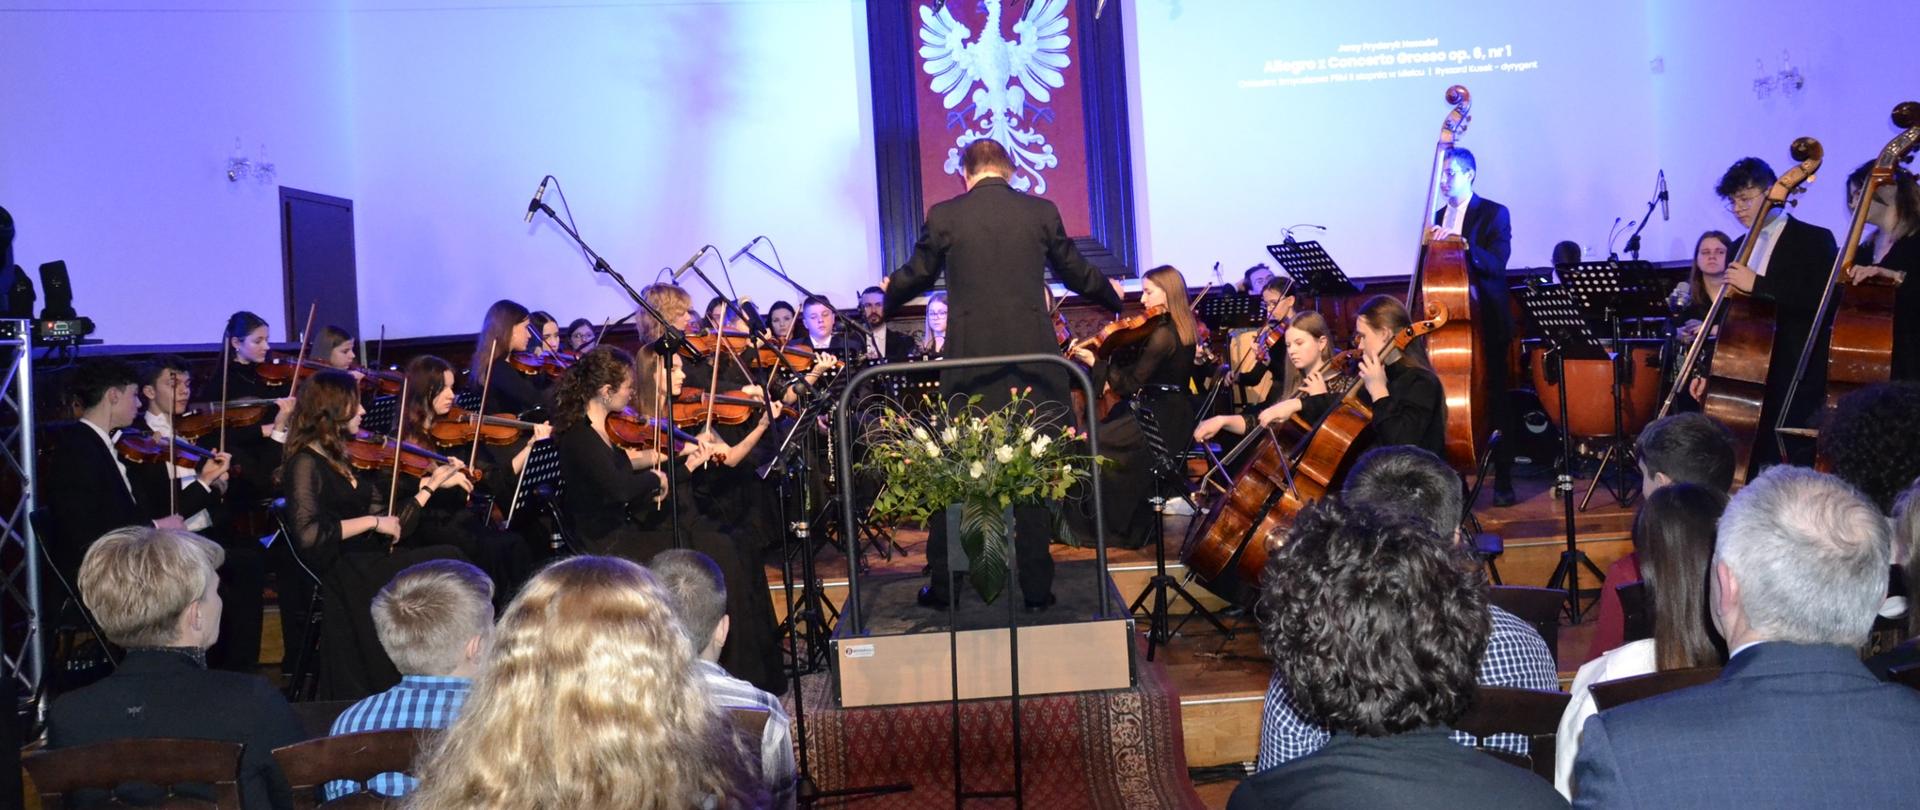 zdjęcie przedstawia orkiestrę symfoniczną naszej szkoły podczas koncertu w sali królewskiej, w tle na białej ścianie zawieszone jest wiecie godło polski